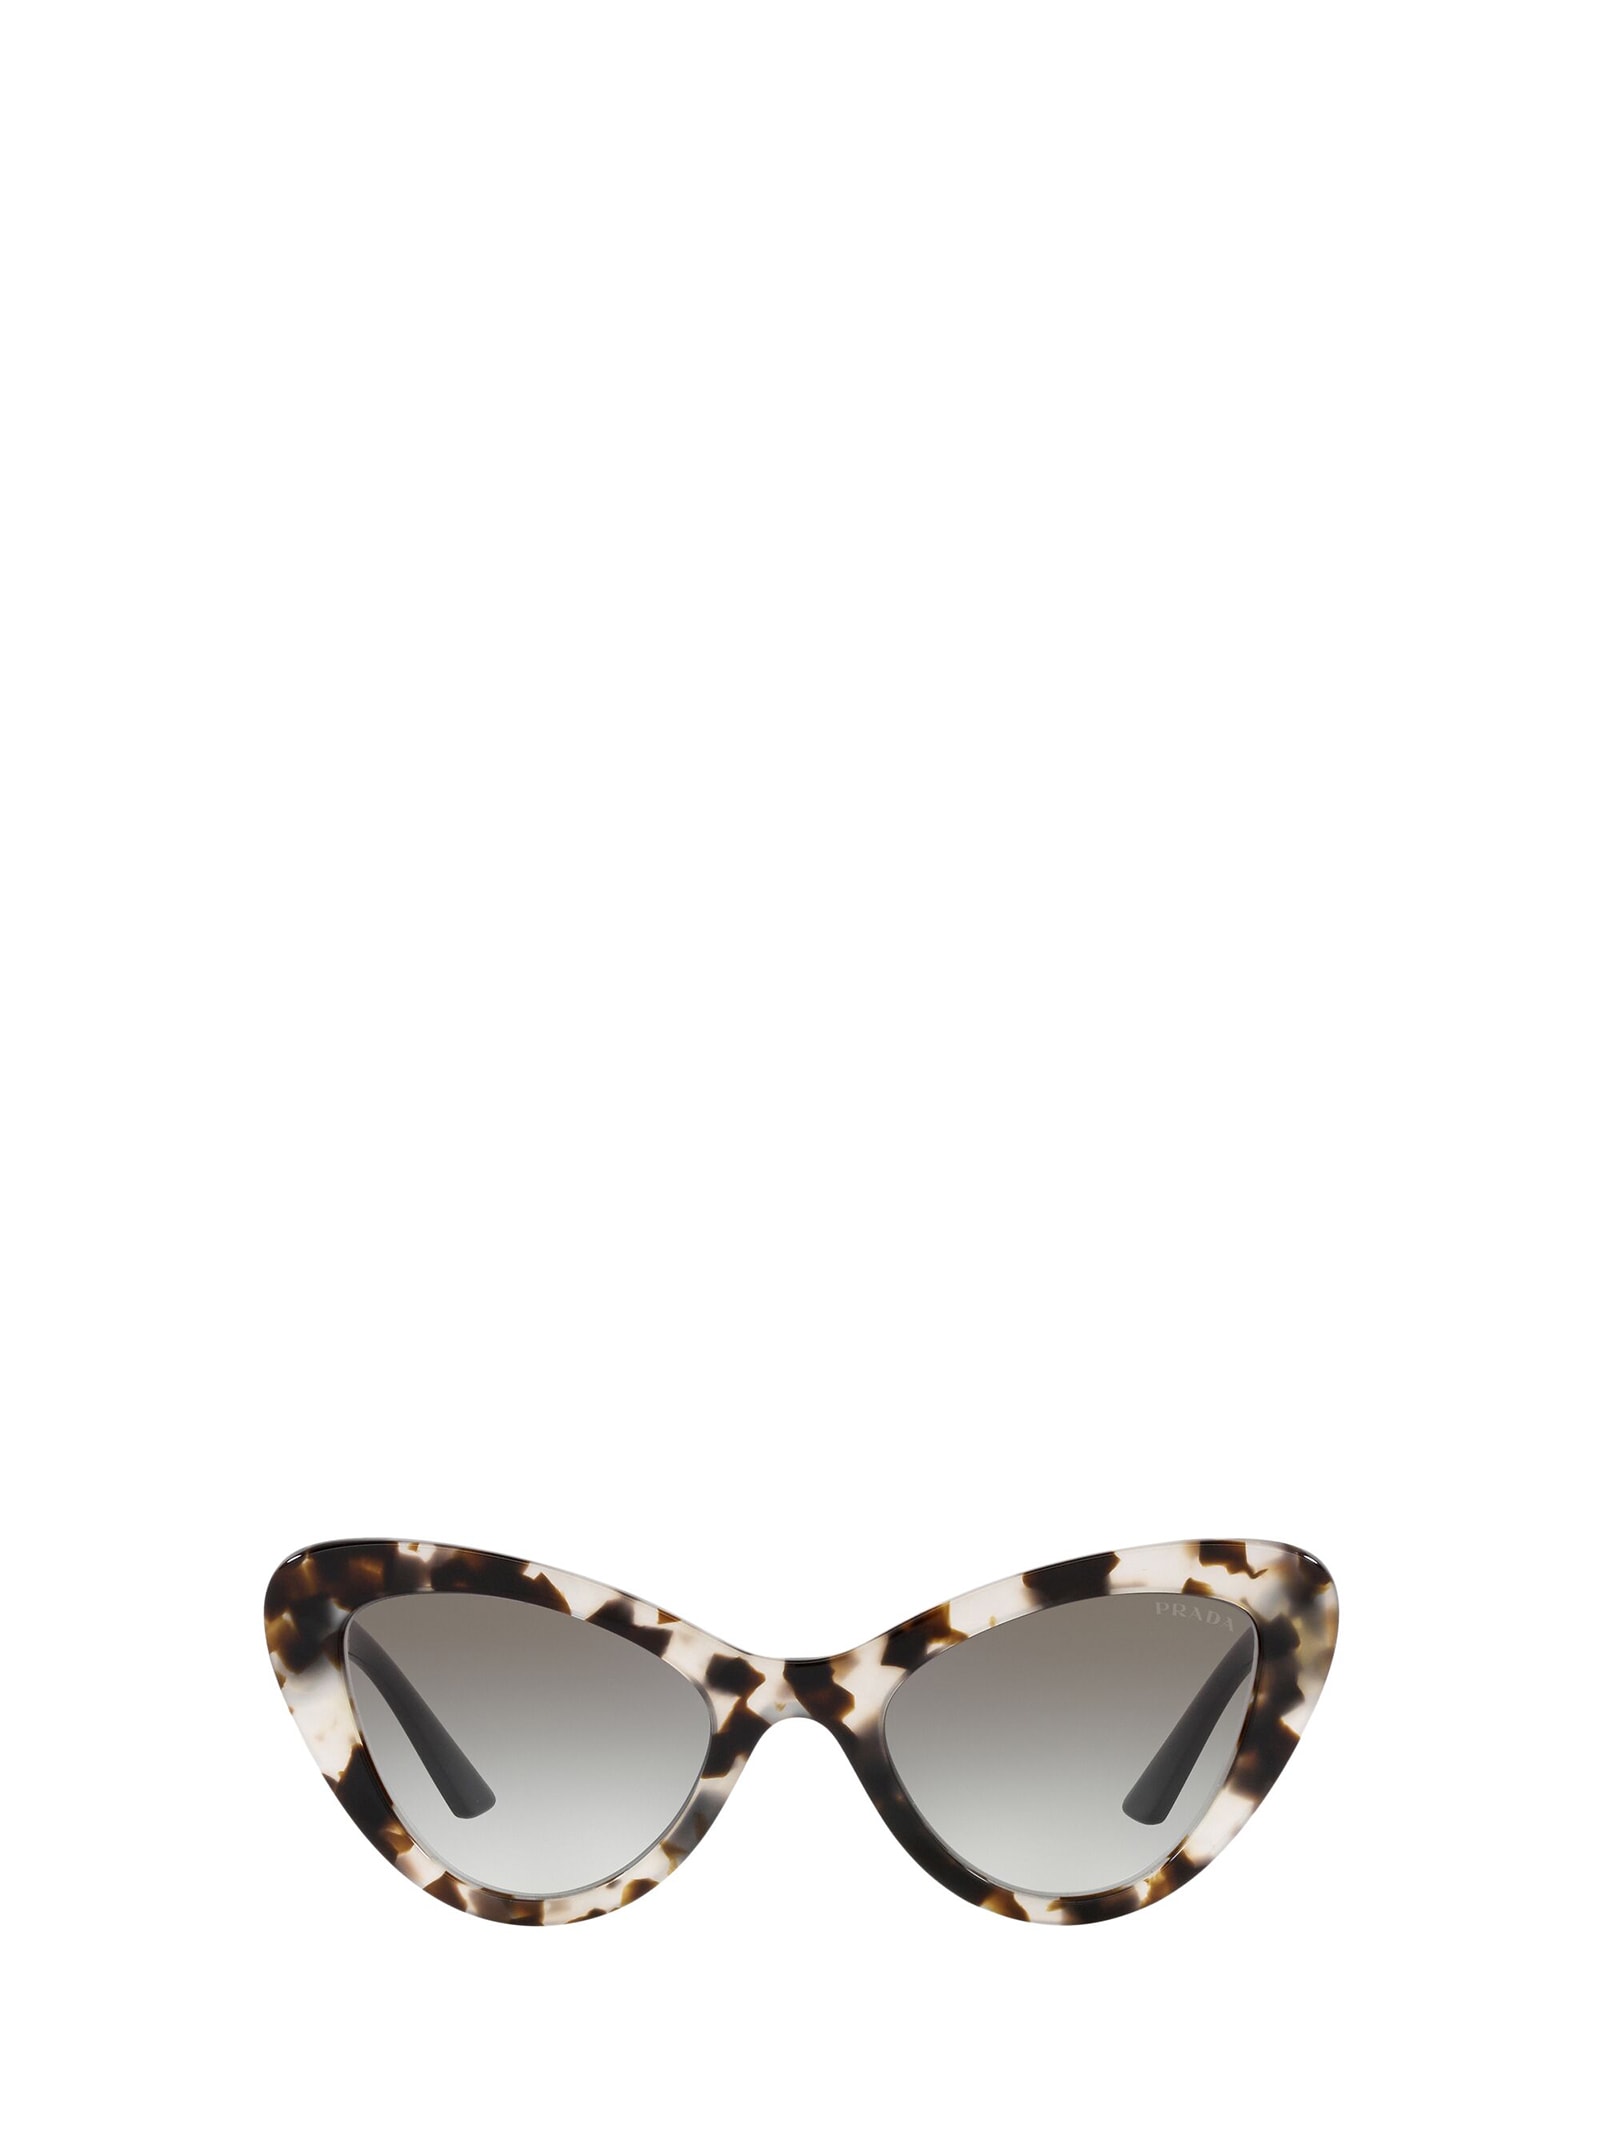 Prada Eyewear Pr 13ys Talc Havana Sunglasses